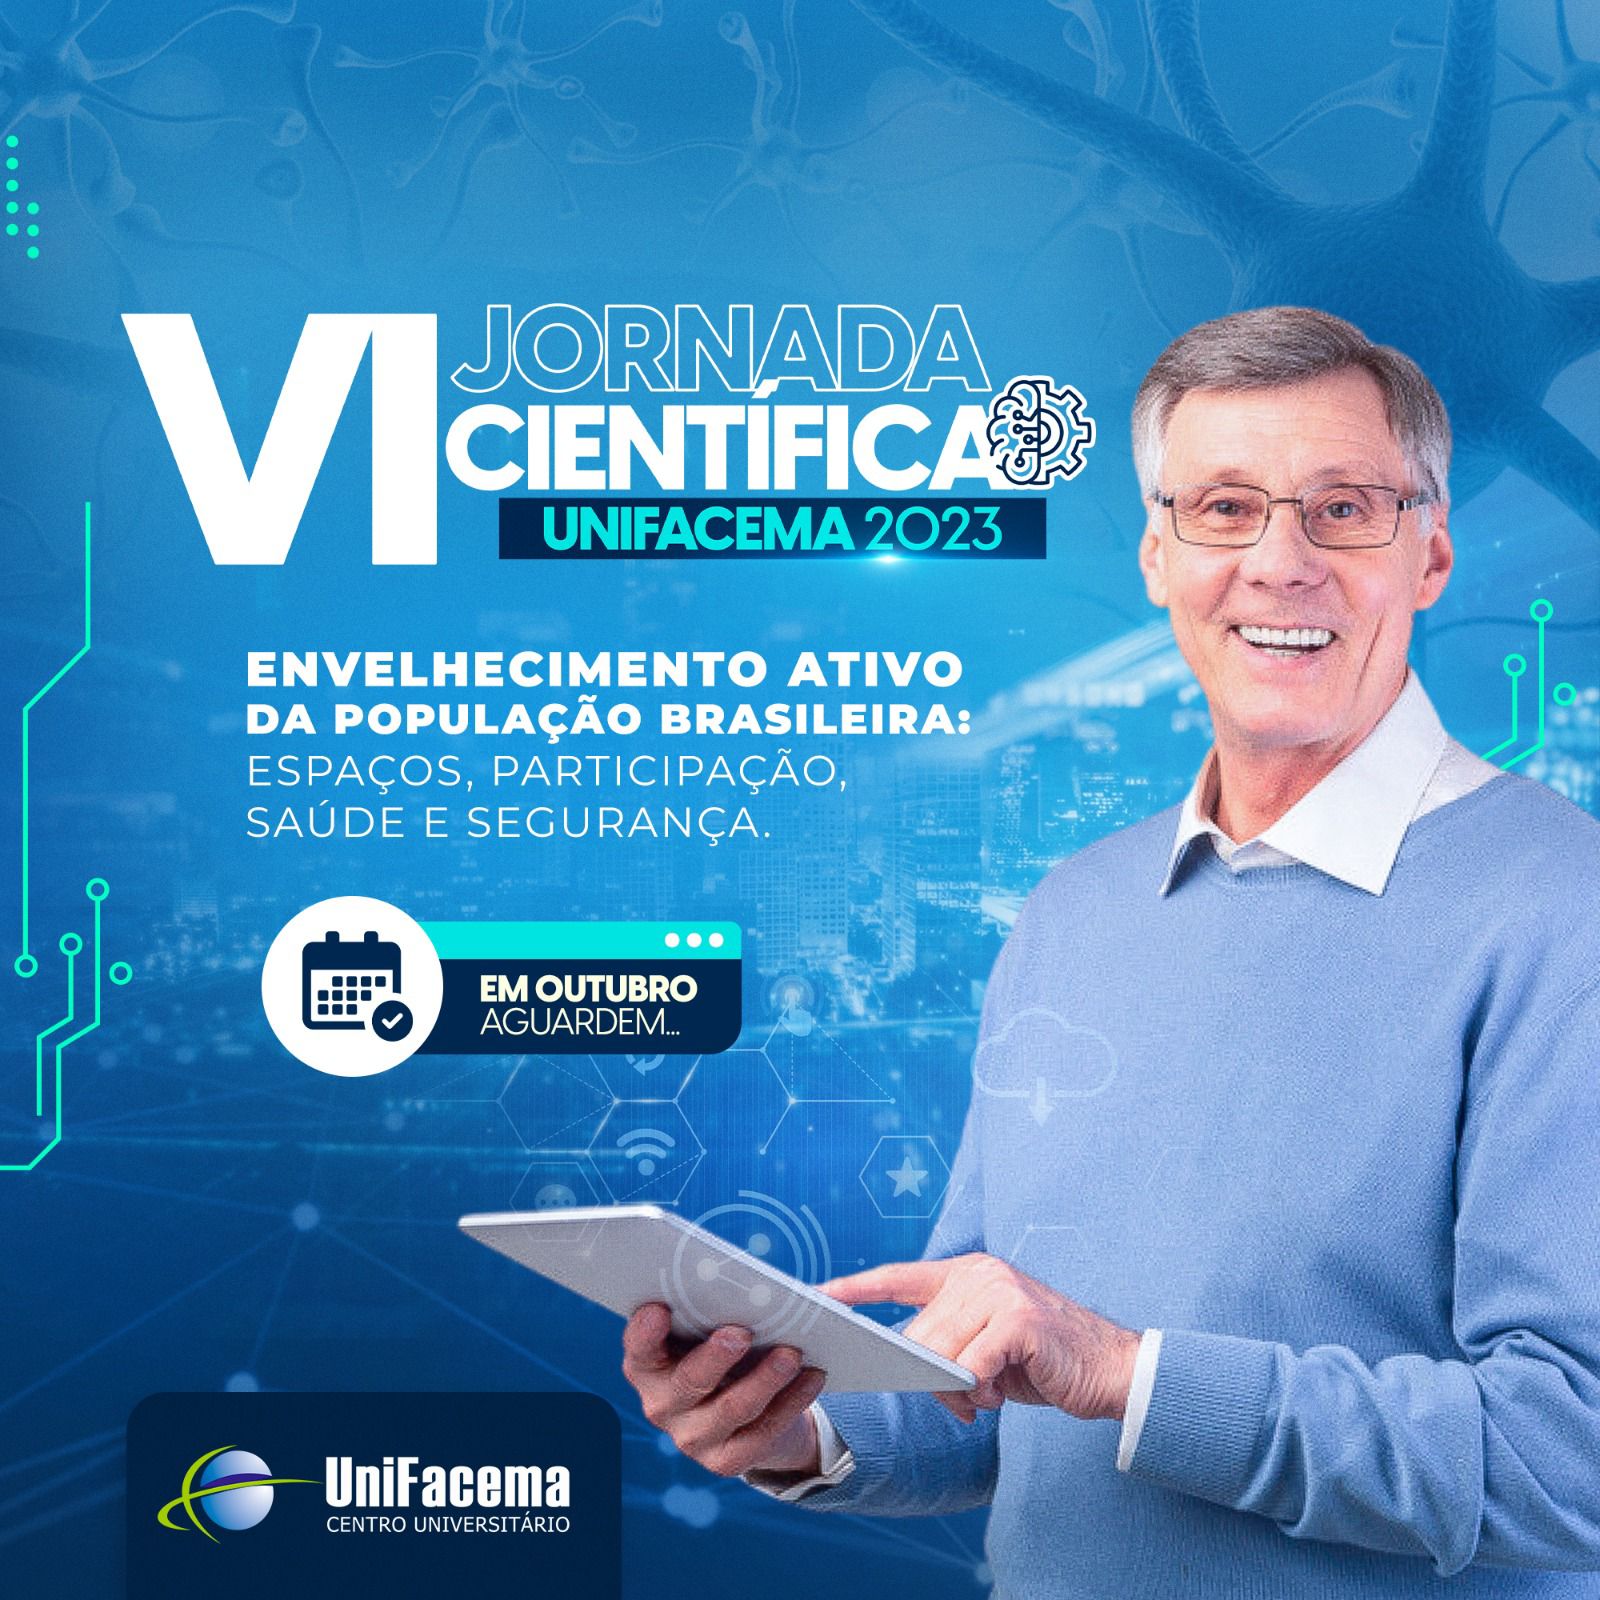 Com o tema: “Envelhecimento ativo da população brasileira: espaços, participação, saúde e segurança”, o UniFacema realizará sua VI Jornada Científica